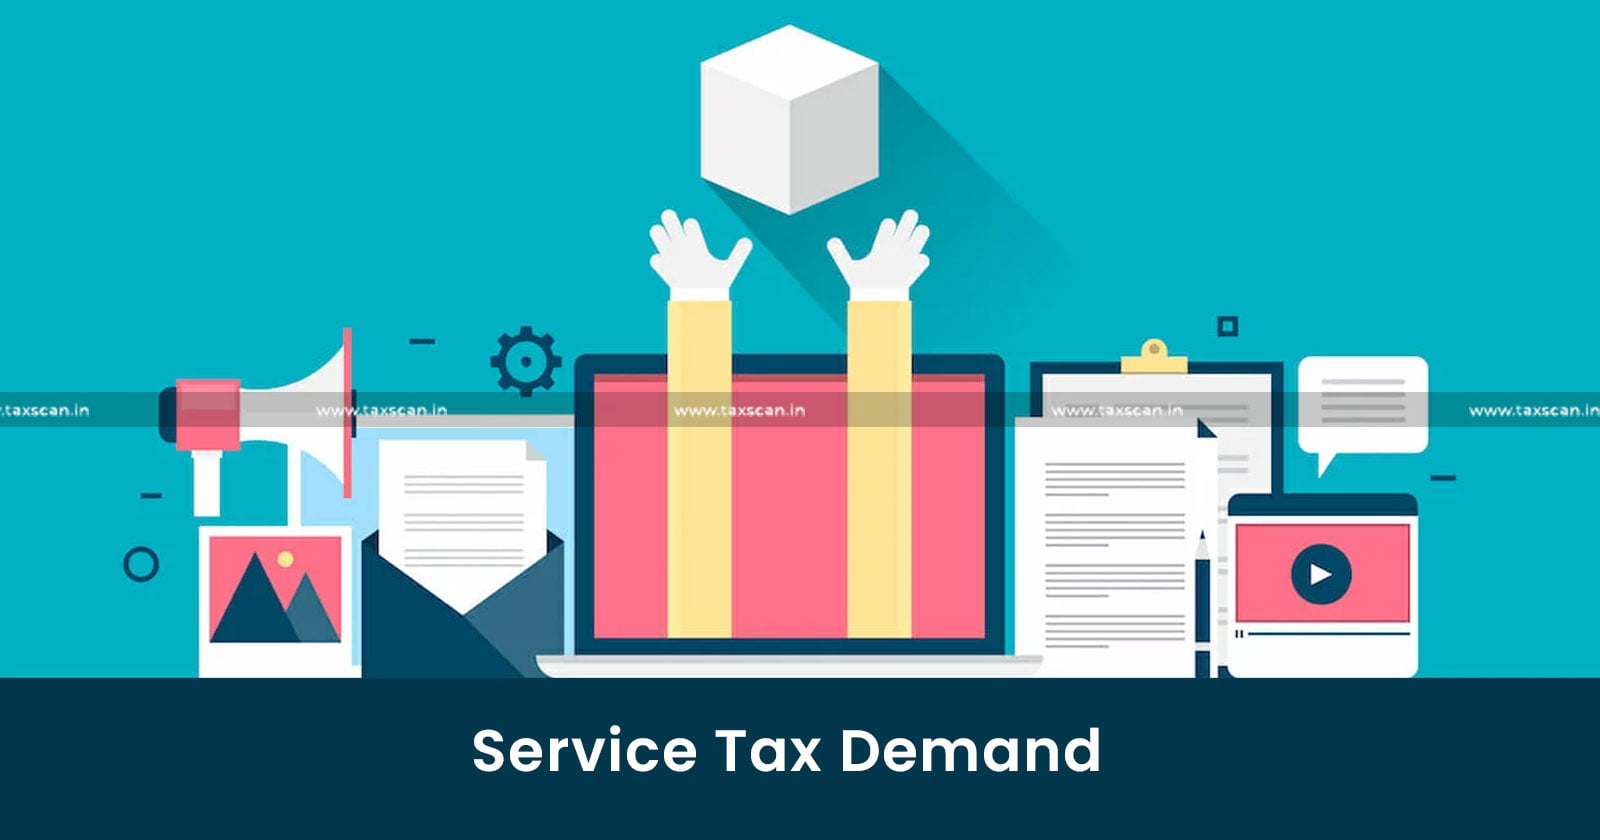 CESTAT - Service Tax demand - serviceTax - Developers - Co-development Agreement - taxscan